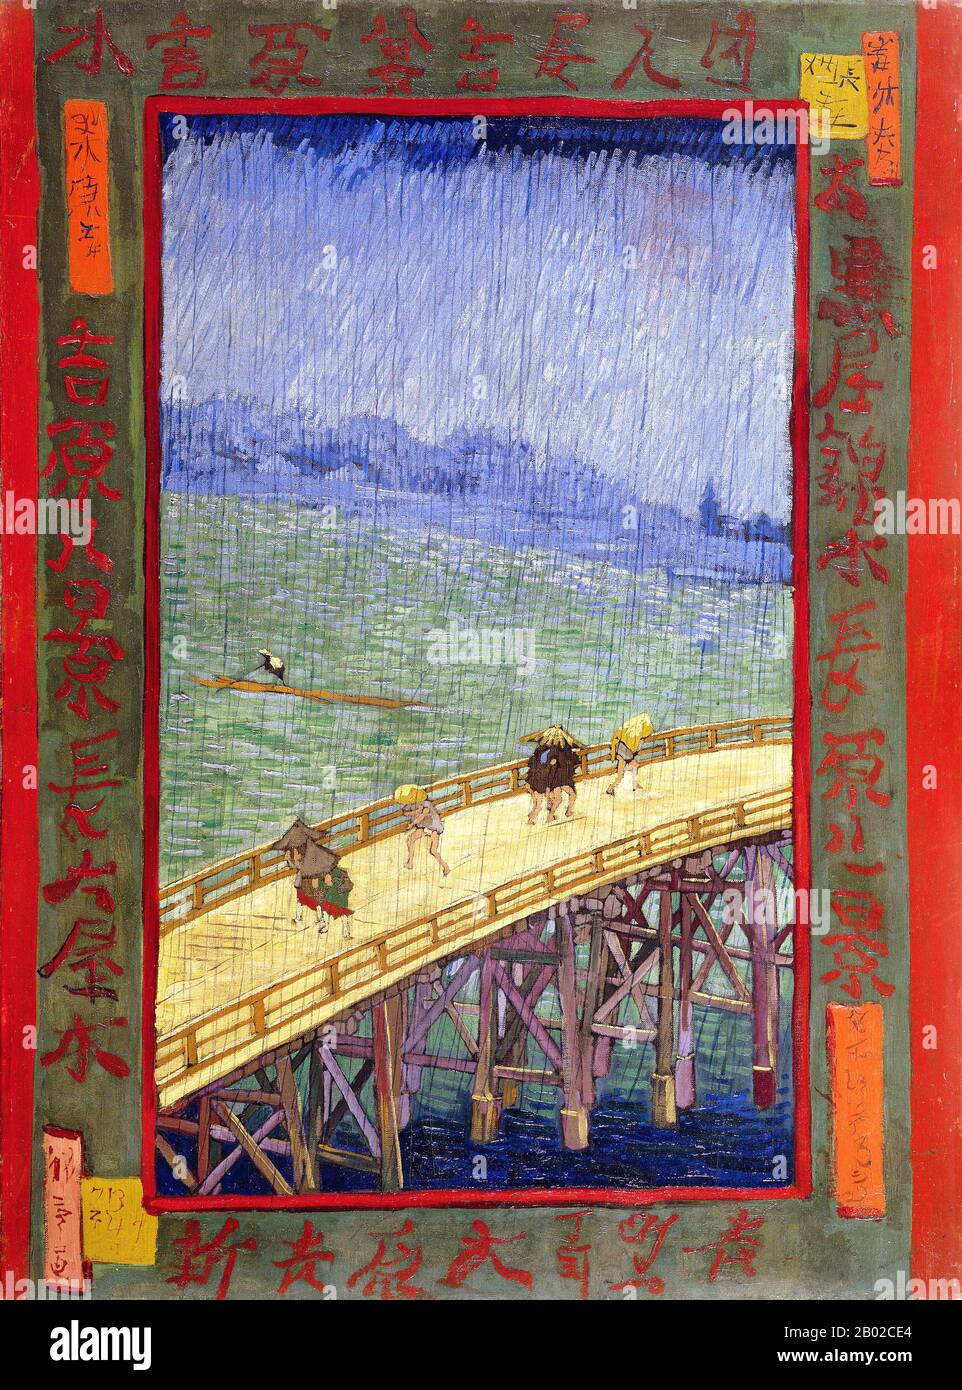 Japonaiserie era el término que el pintor post-impresionista holandés Vincent van Gogh solía expresar la influencia del arte japonés. Antes de 1854, el comercio con Japón se limitaba a un monopolio holandés y los productos japoneses importados a Europa se limitaban en su mayor parte a la porcelana y la laca. La Convención de Kanagawa puso fin a la política exterior japonesa De 200 años de Edad de Separación y abrió el comercio entre Japón y Occidente. Artistas como Manet, Degas y Monet, seguidos por Van Gogh, comenzaron a recoger las copias en bloque de madera de color barato llamadas impresiones ukiyo-e. Por un tiempo Vincent y su Foto de stock